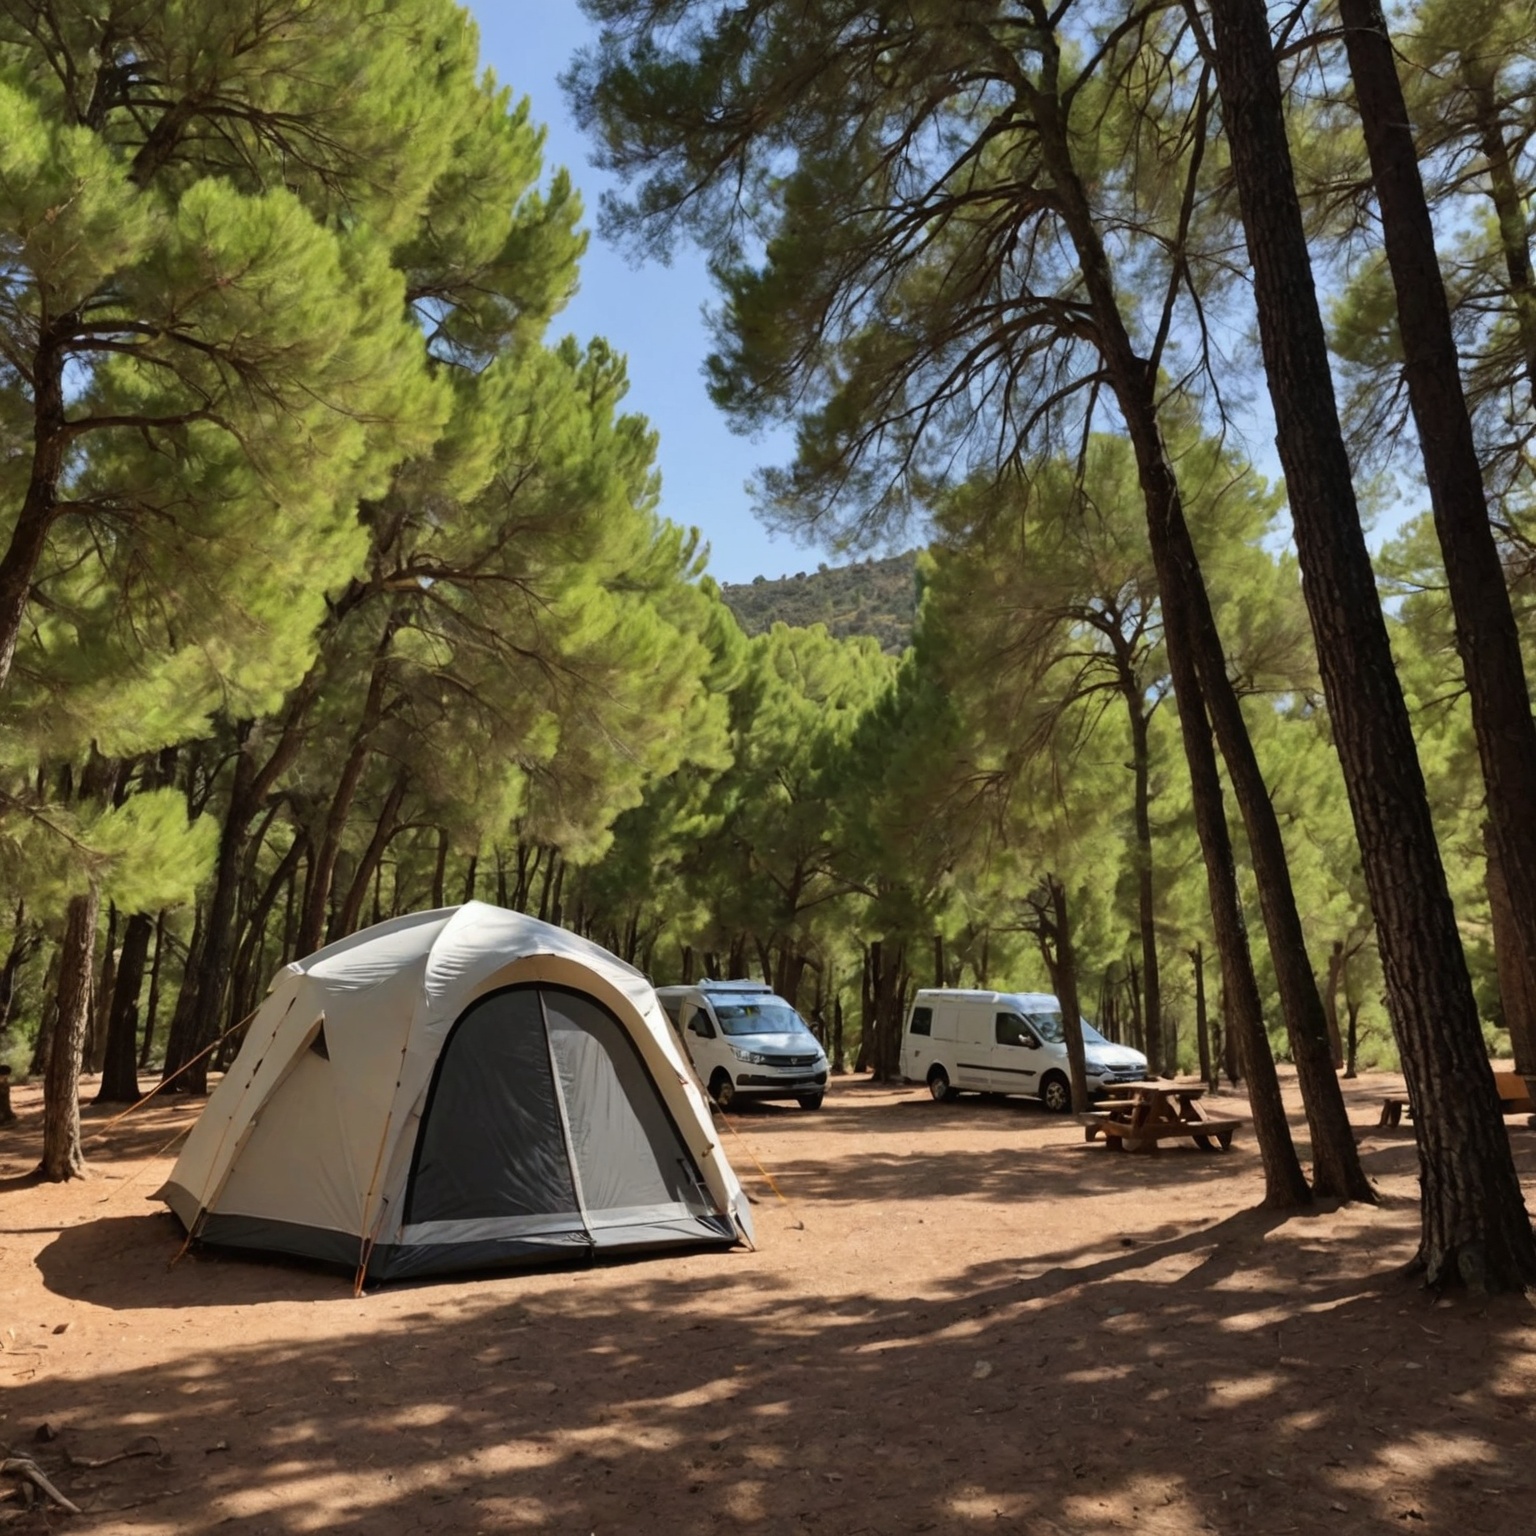 Découvrez le Charme Unique du Camping Campasun Aups dans le Var: Votre Guide pour une Évasion Nature Inoubliable